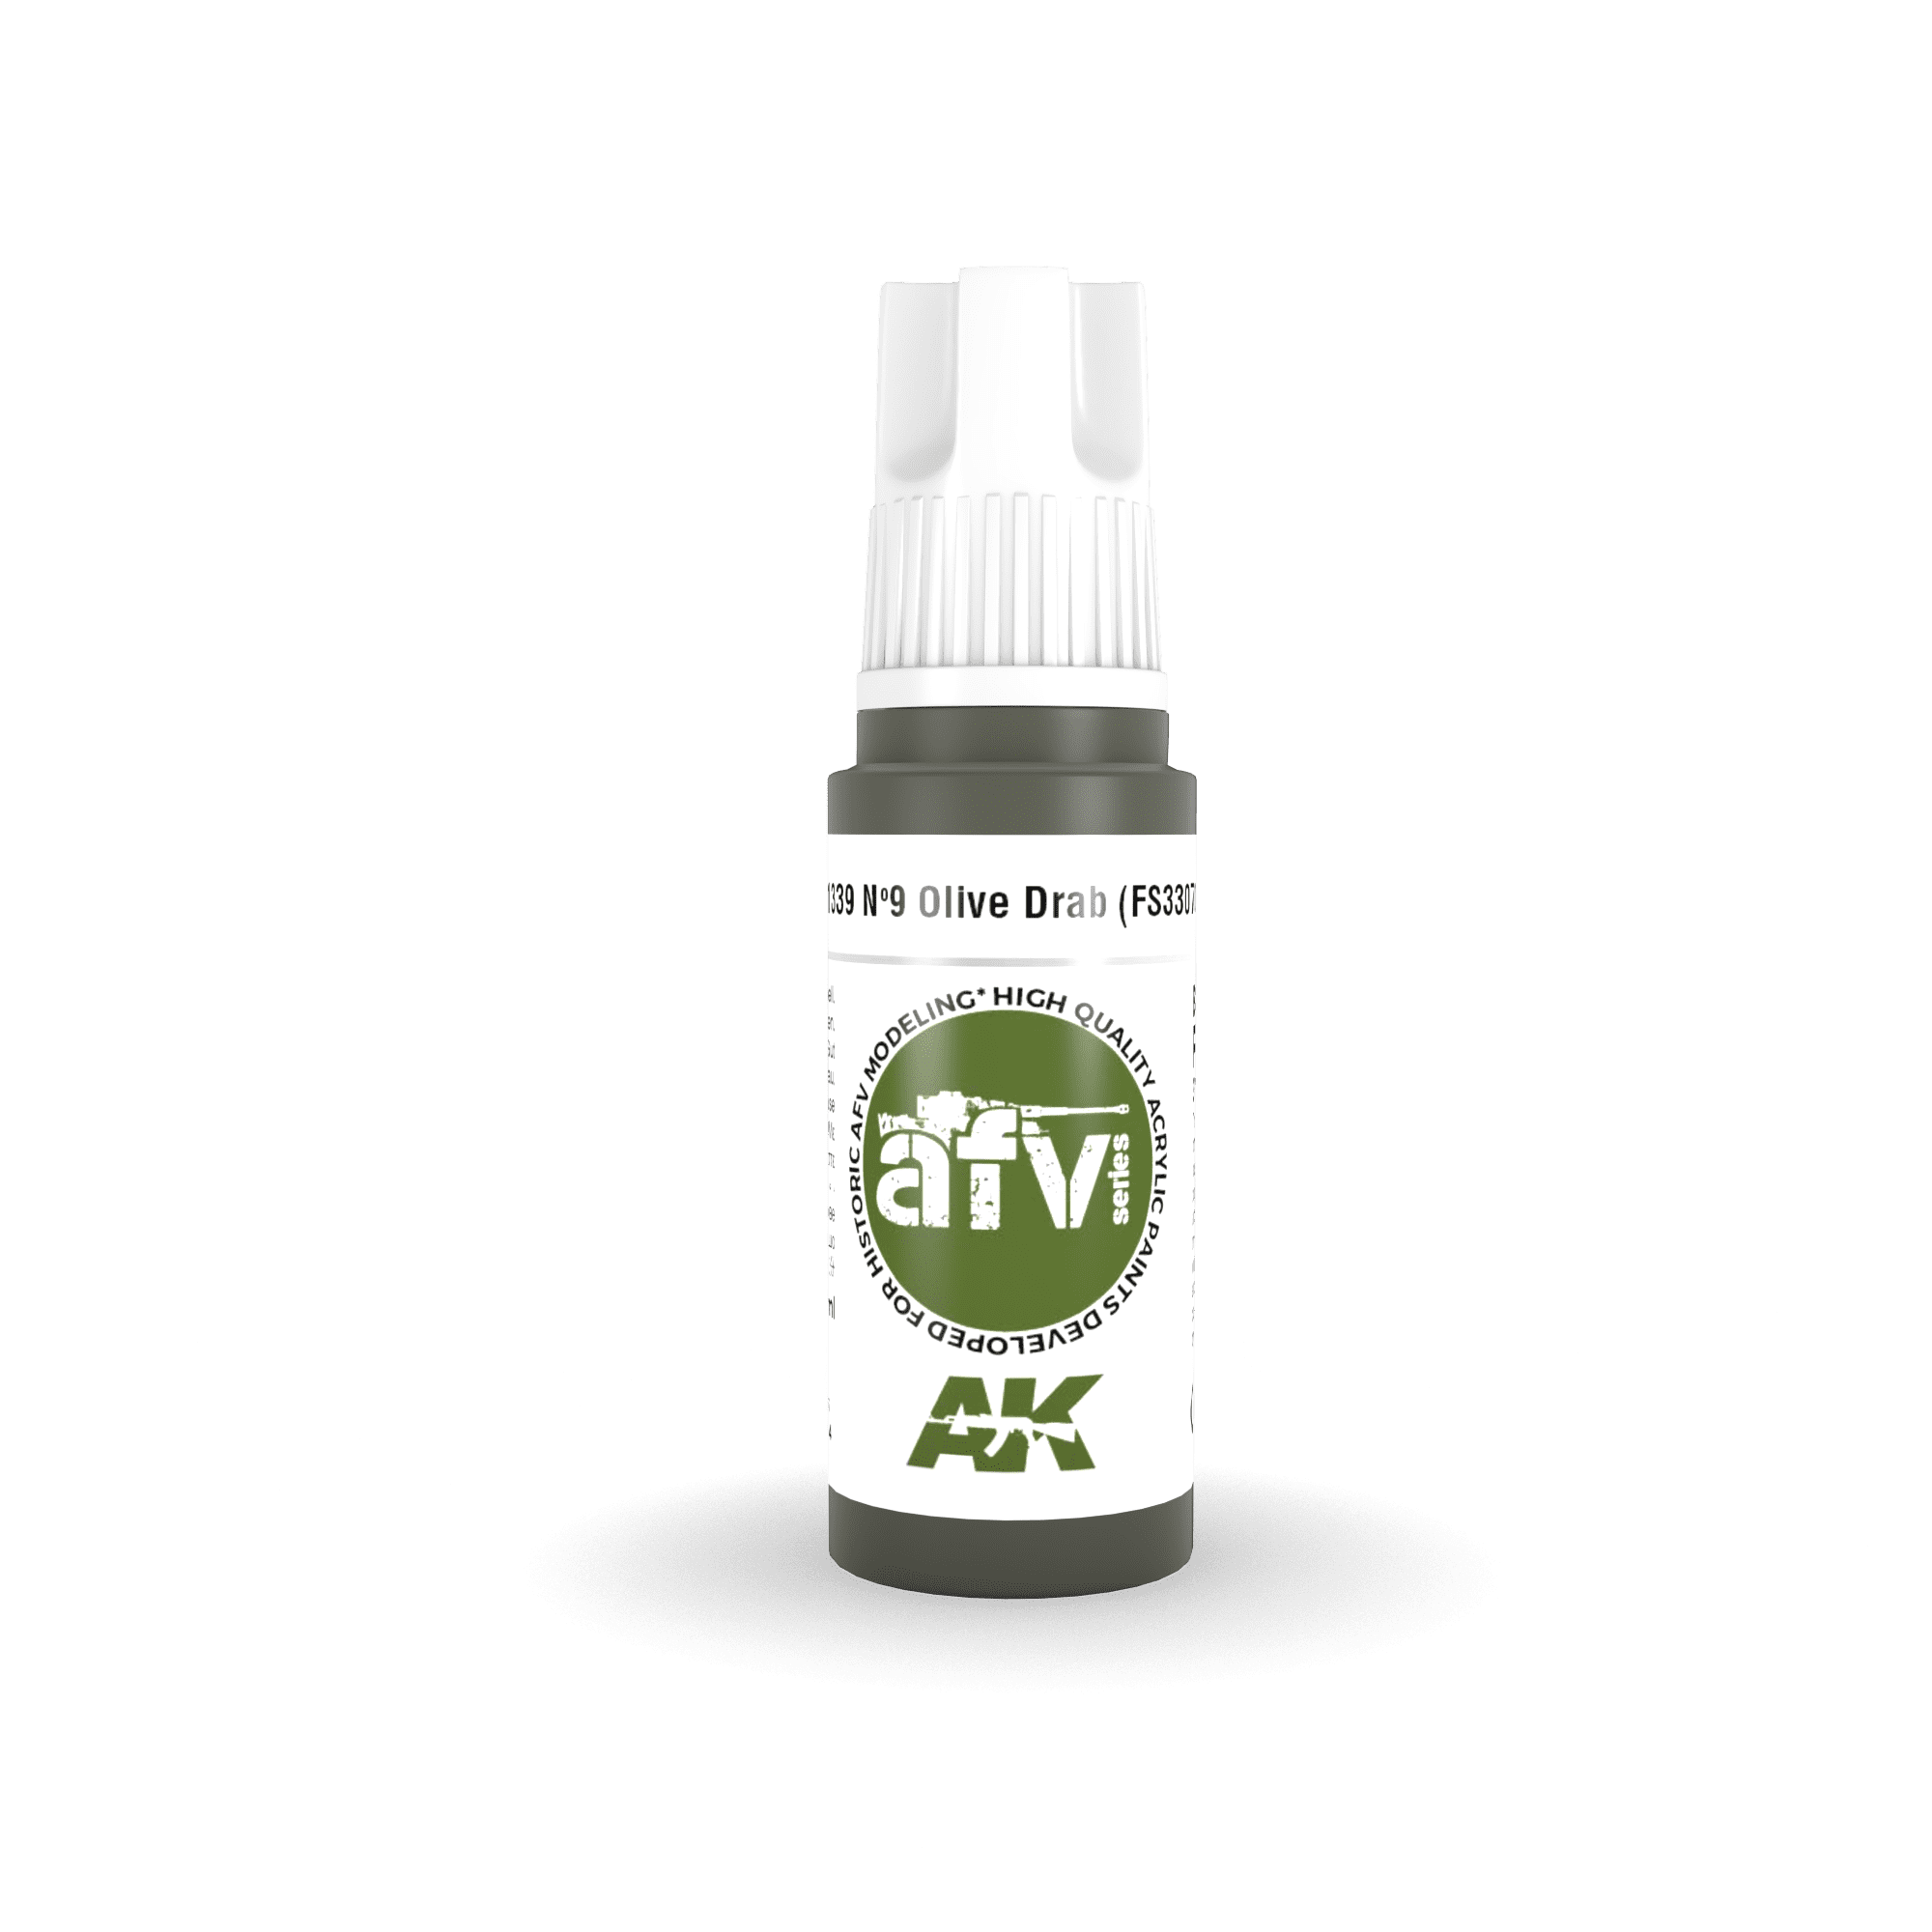 Nº9 Olive Drab (FS33070) – AFV